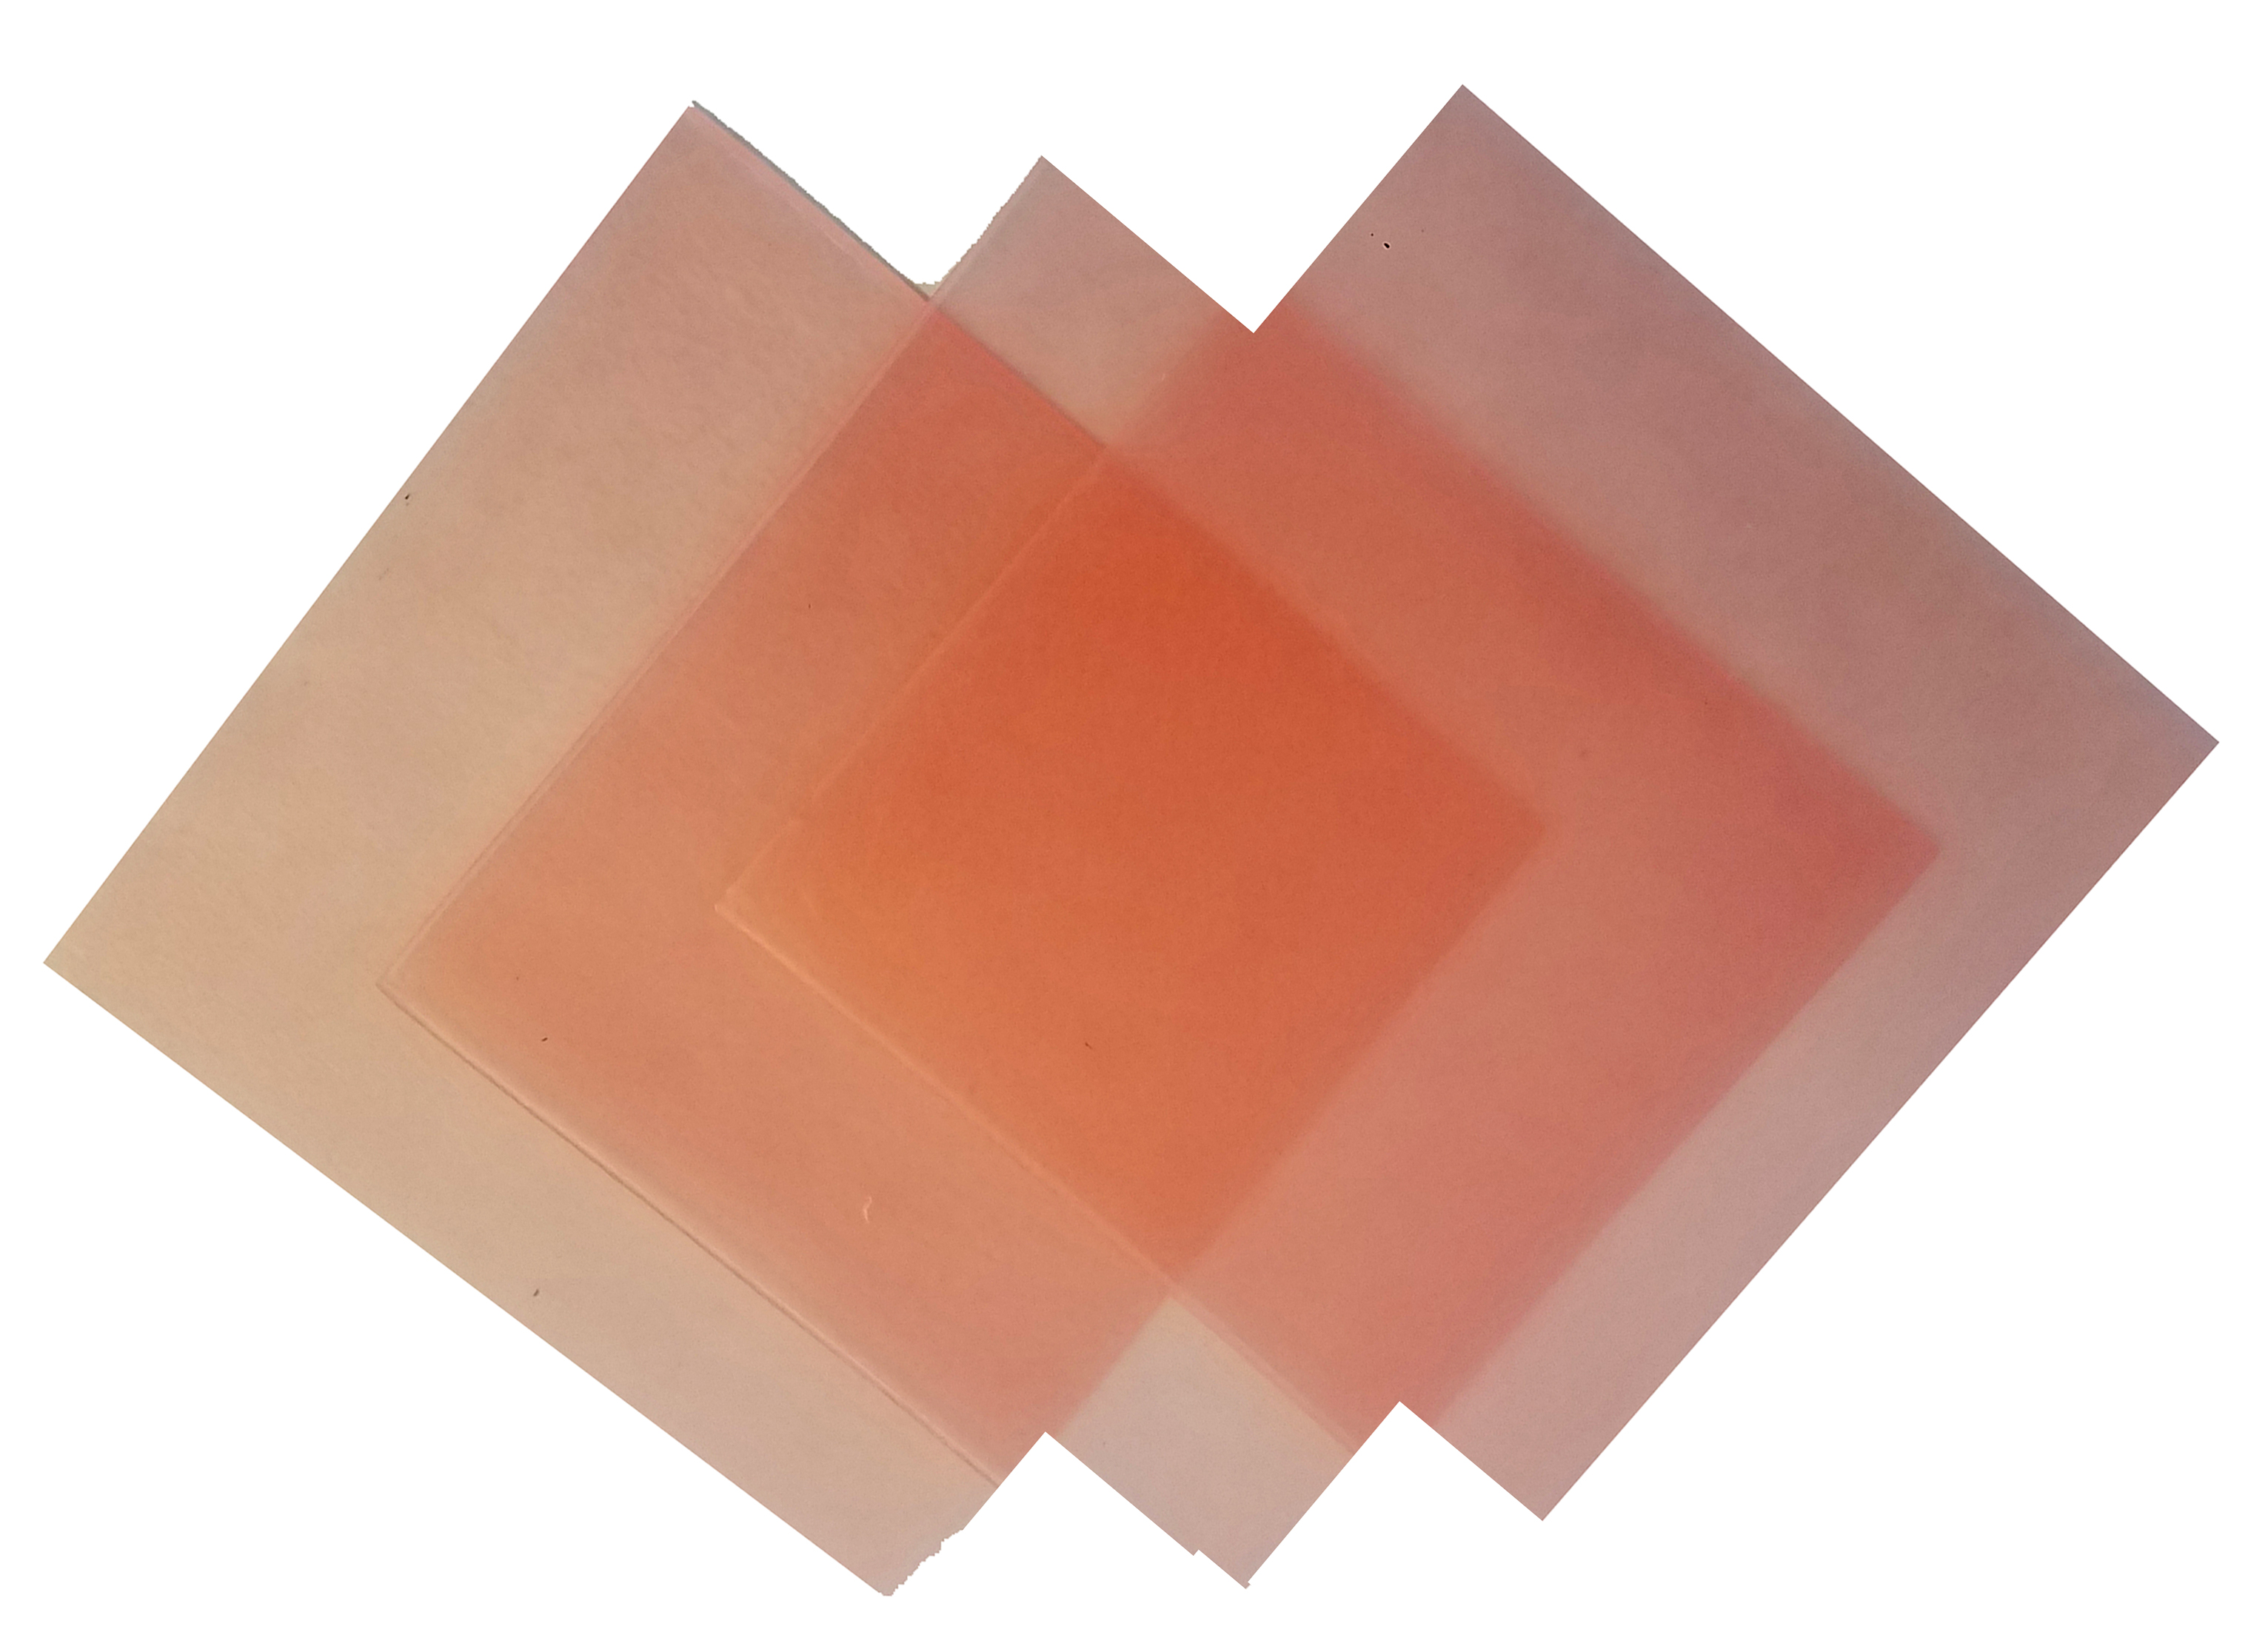 4\"x4\" sheet wax 23 gauge pink